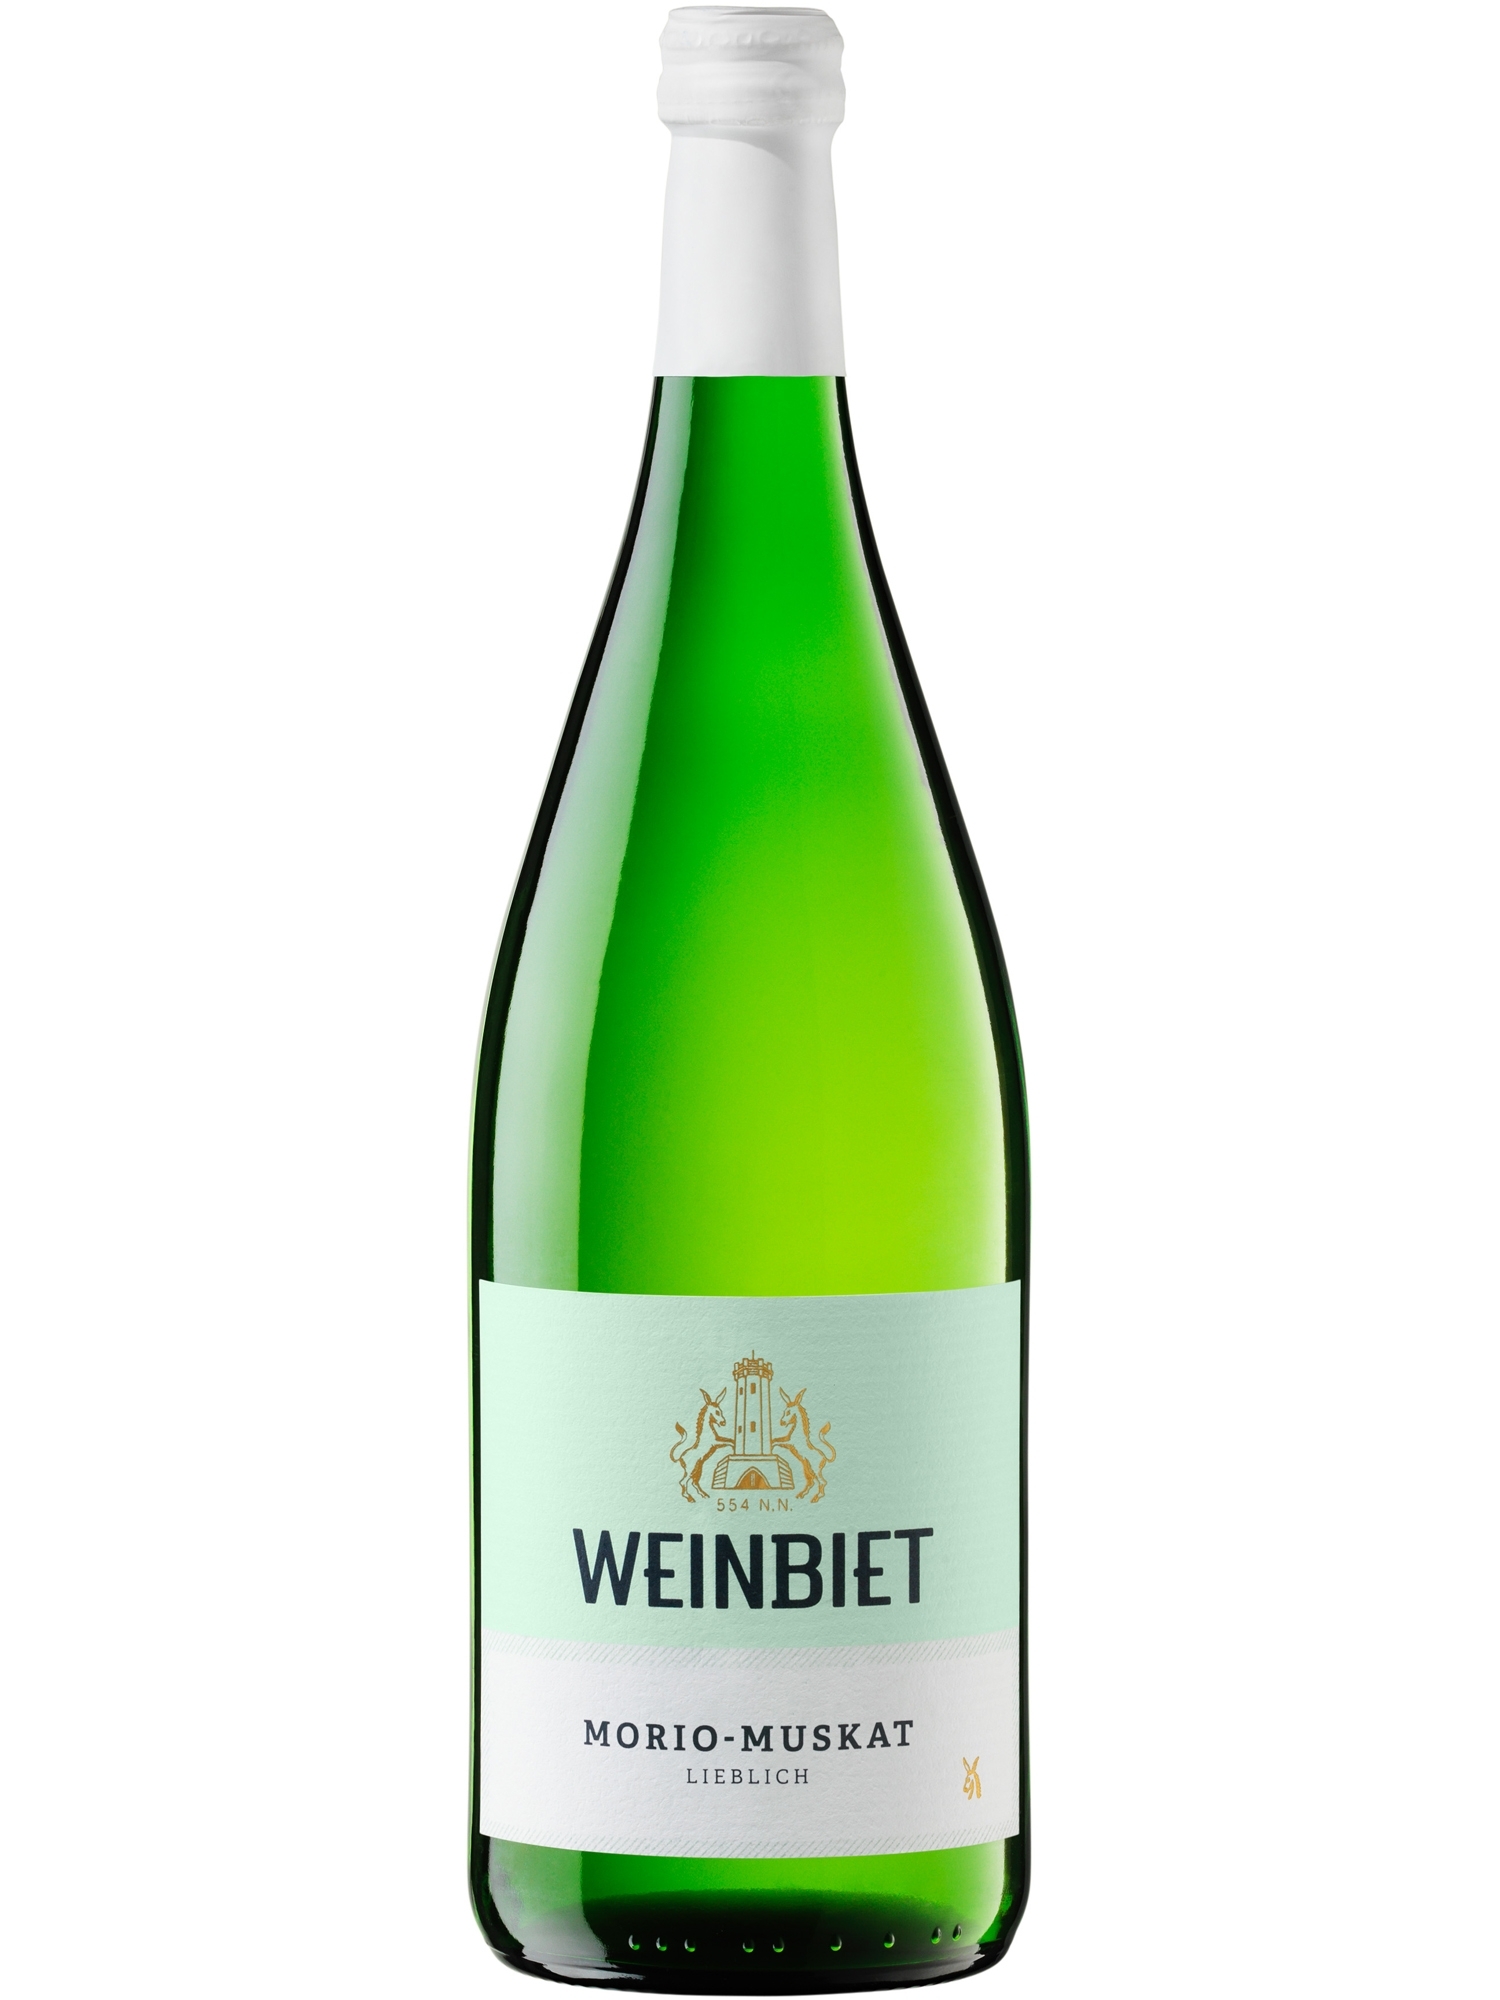 morio-muskat lieblich Weinbiet | Pfalz Online Wein 